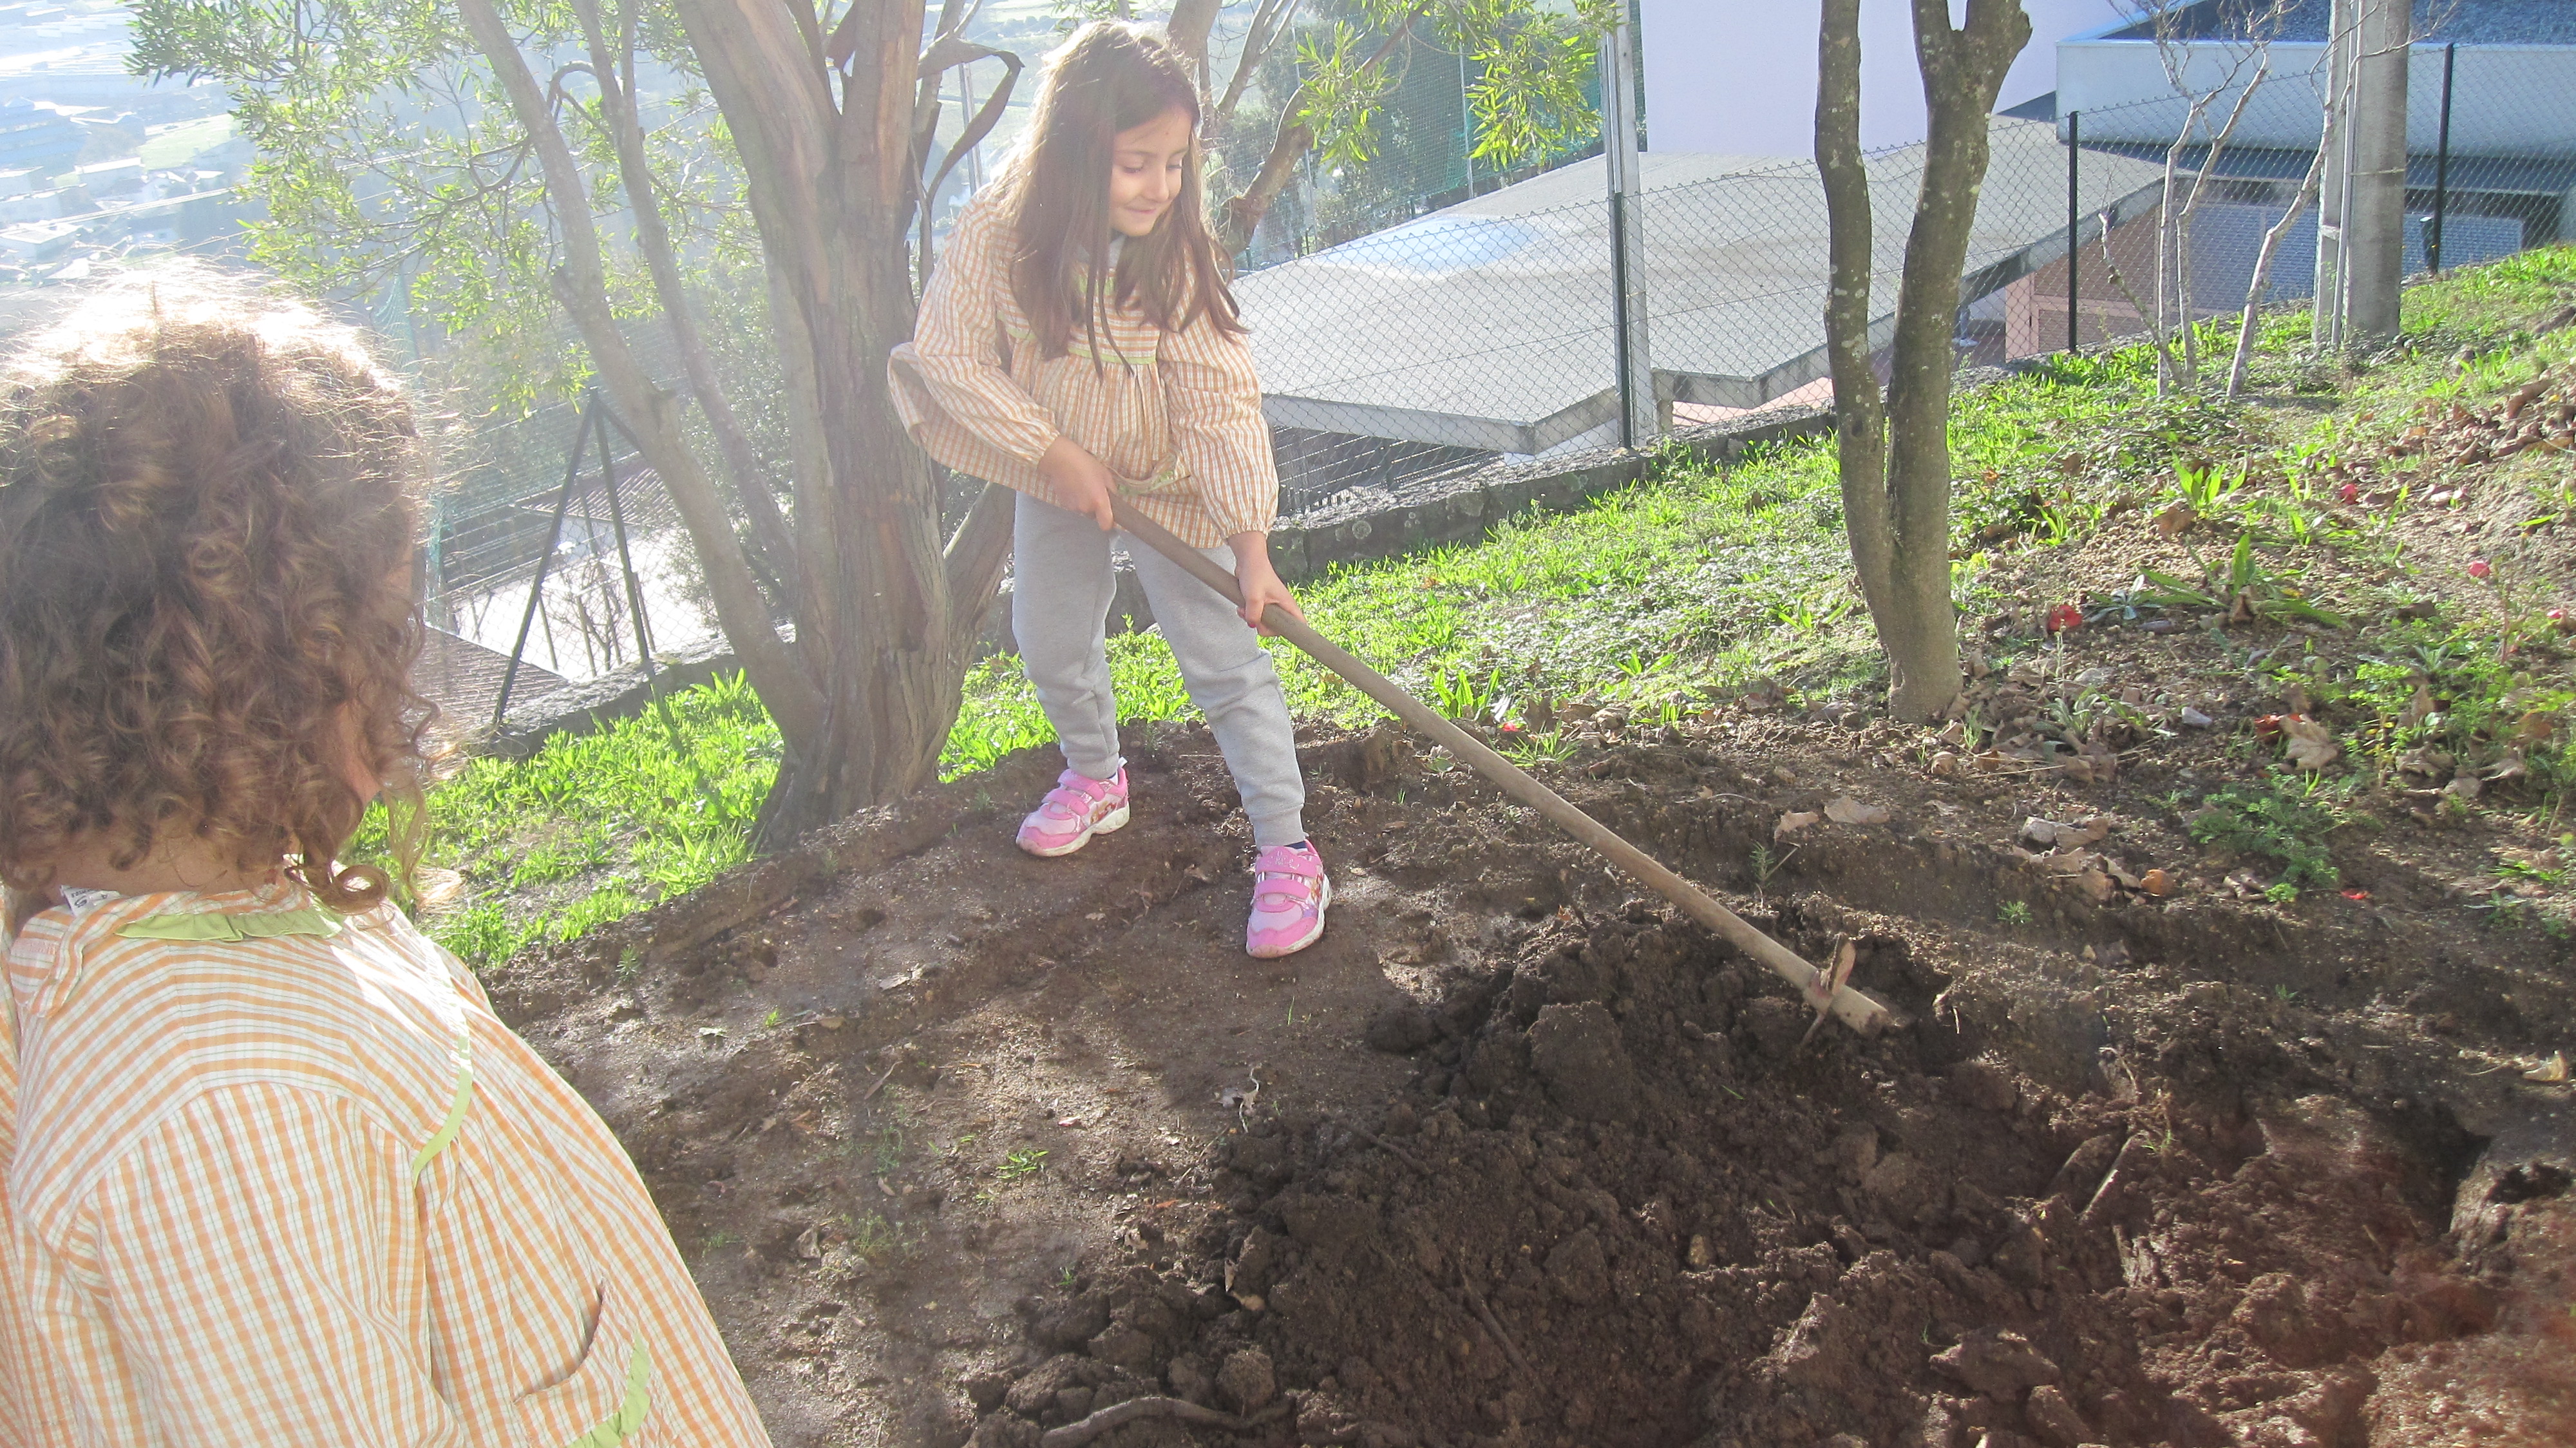 Preparação da zona a cultivar, cavar e remexer a terra.